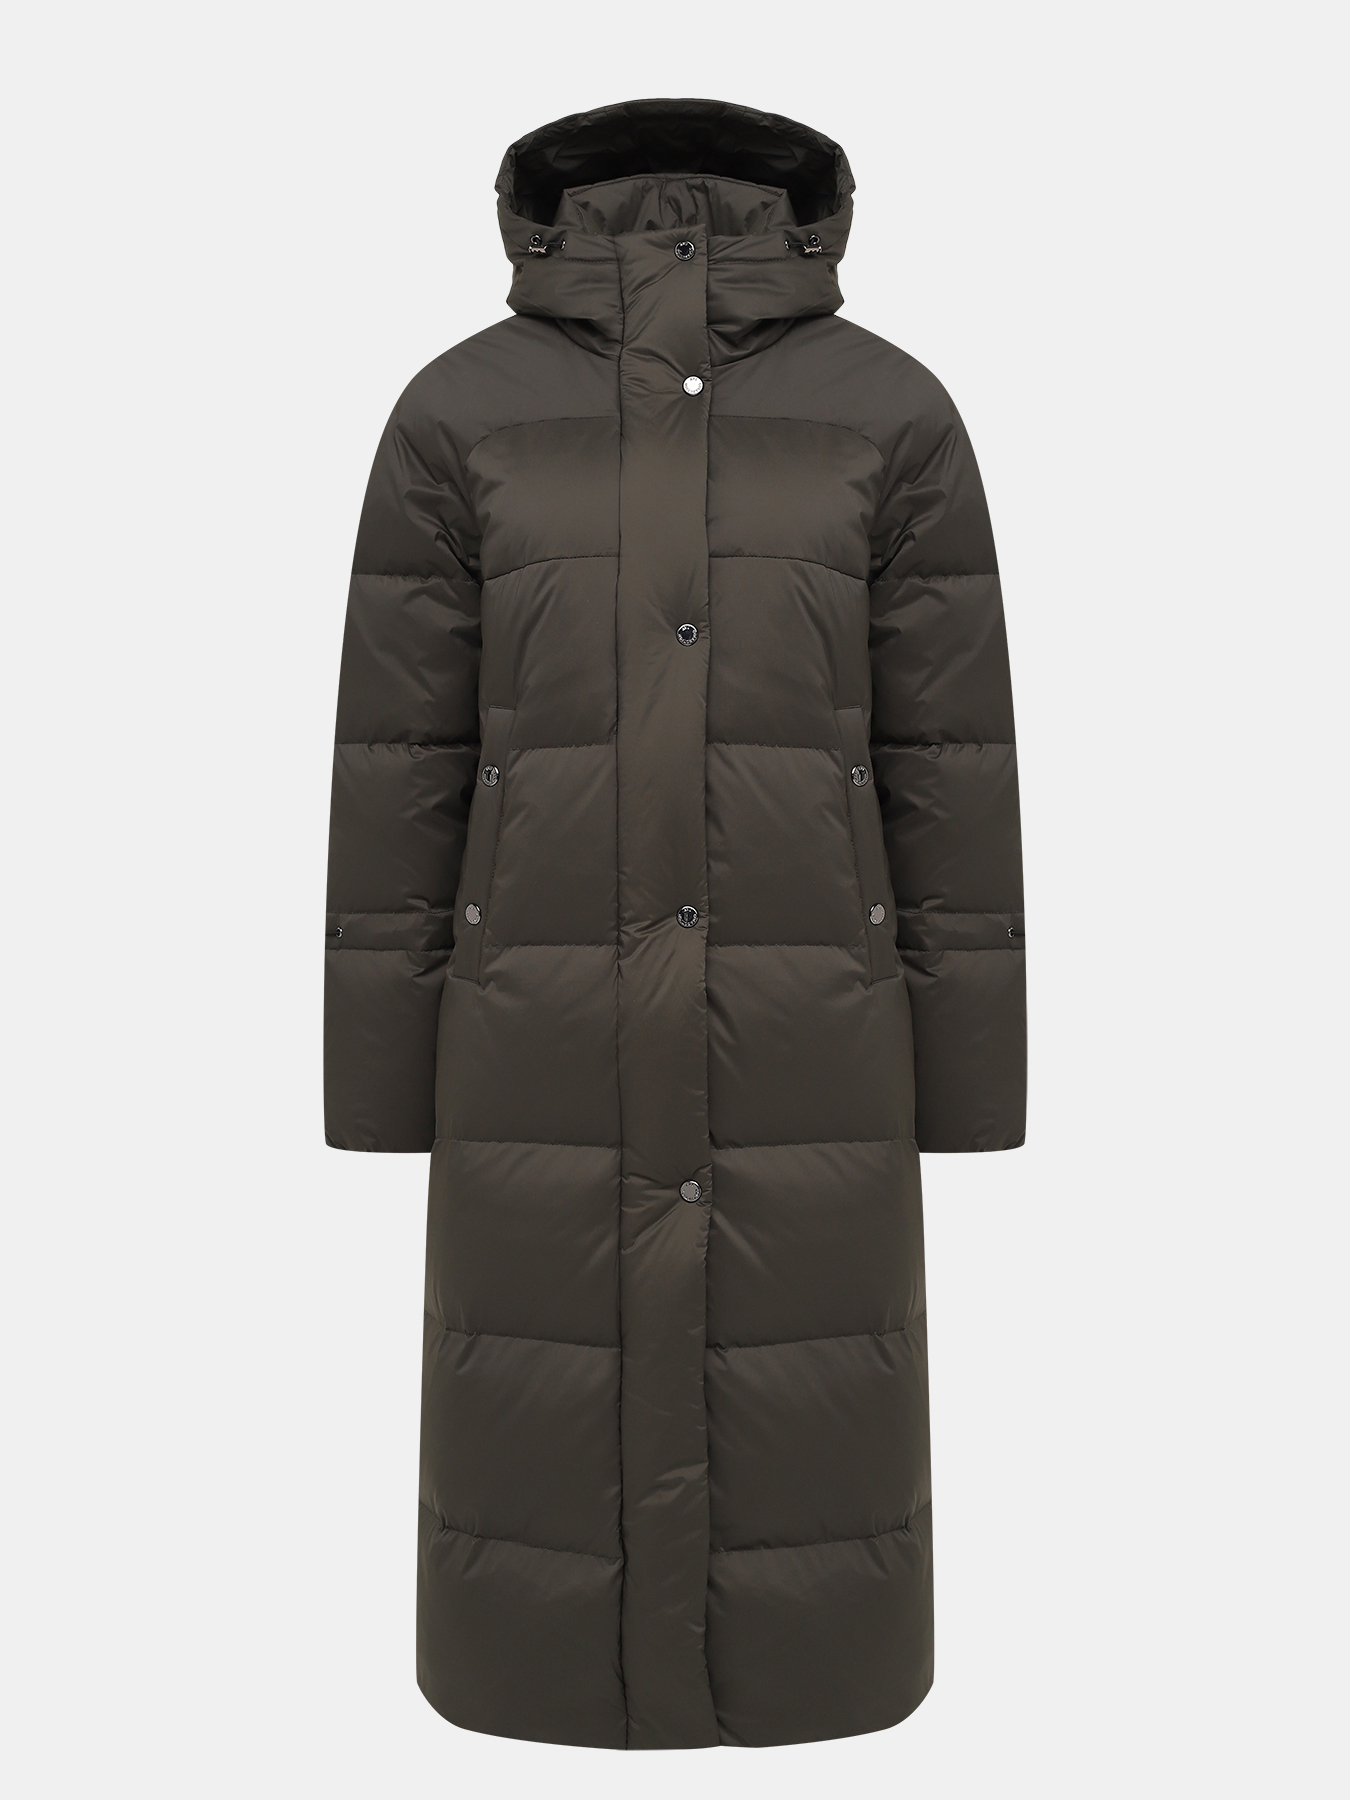 Пальто зимнее AVI 433638-026, цвет хаки, размер 50